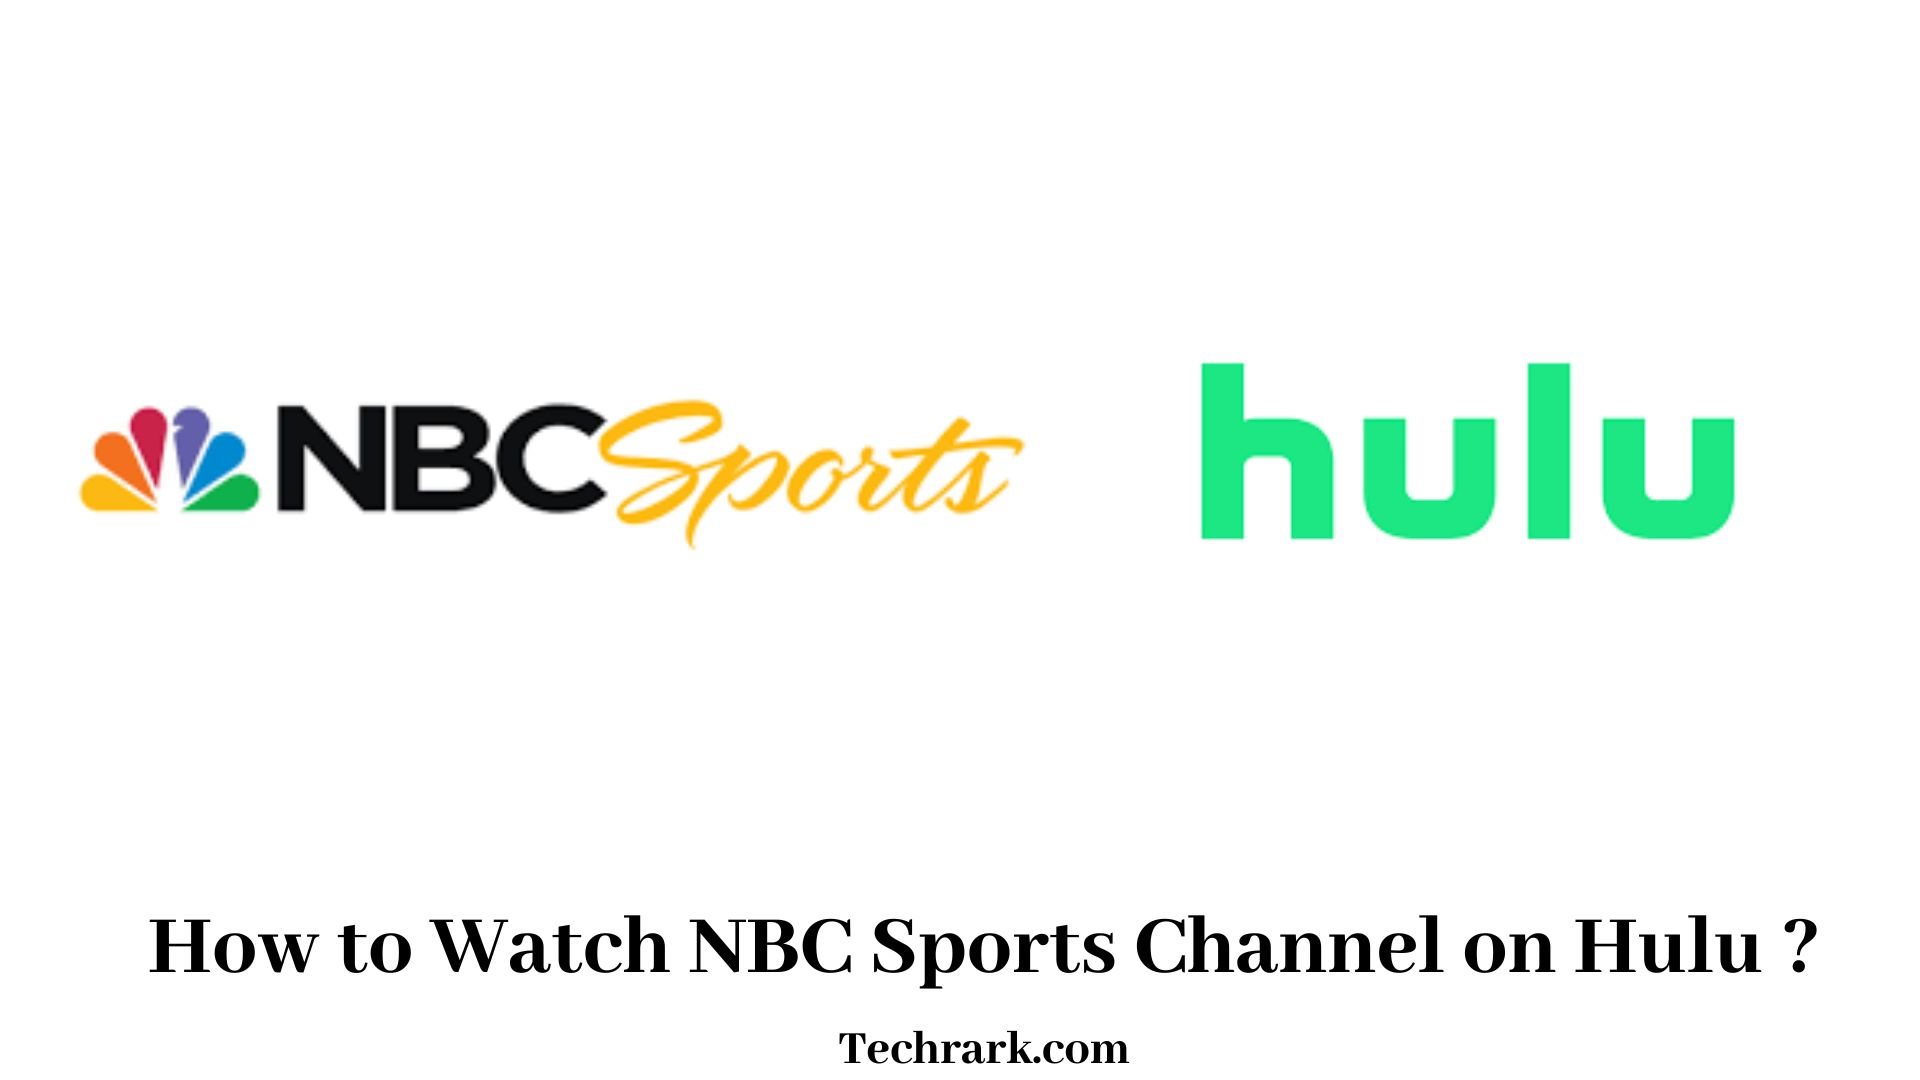 NBC Sports on Hulu